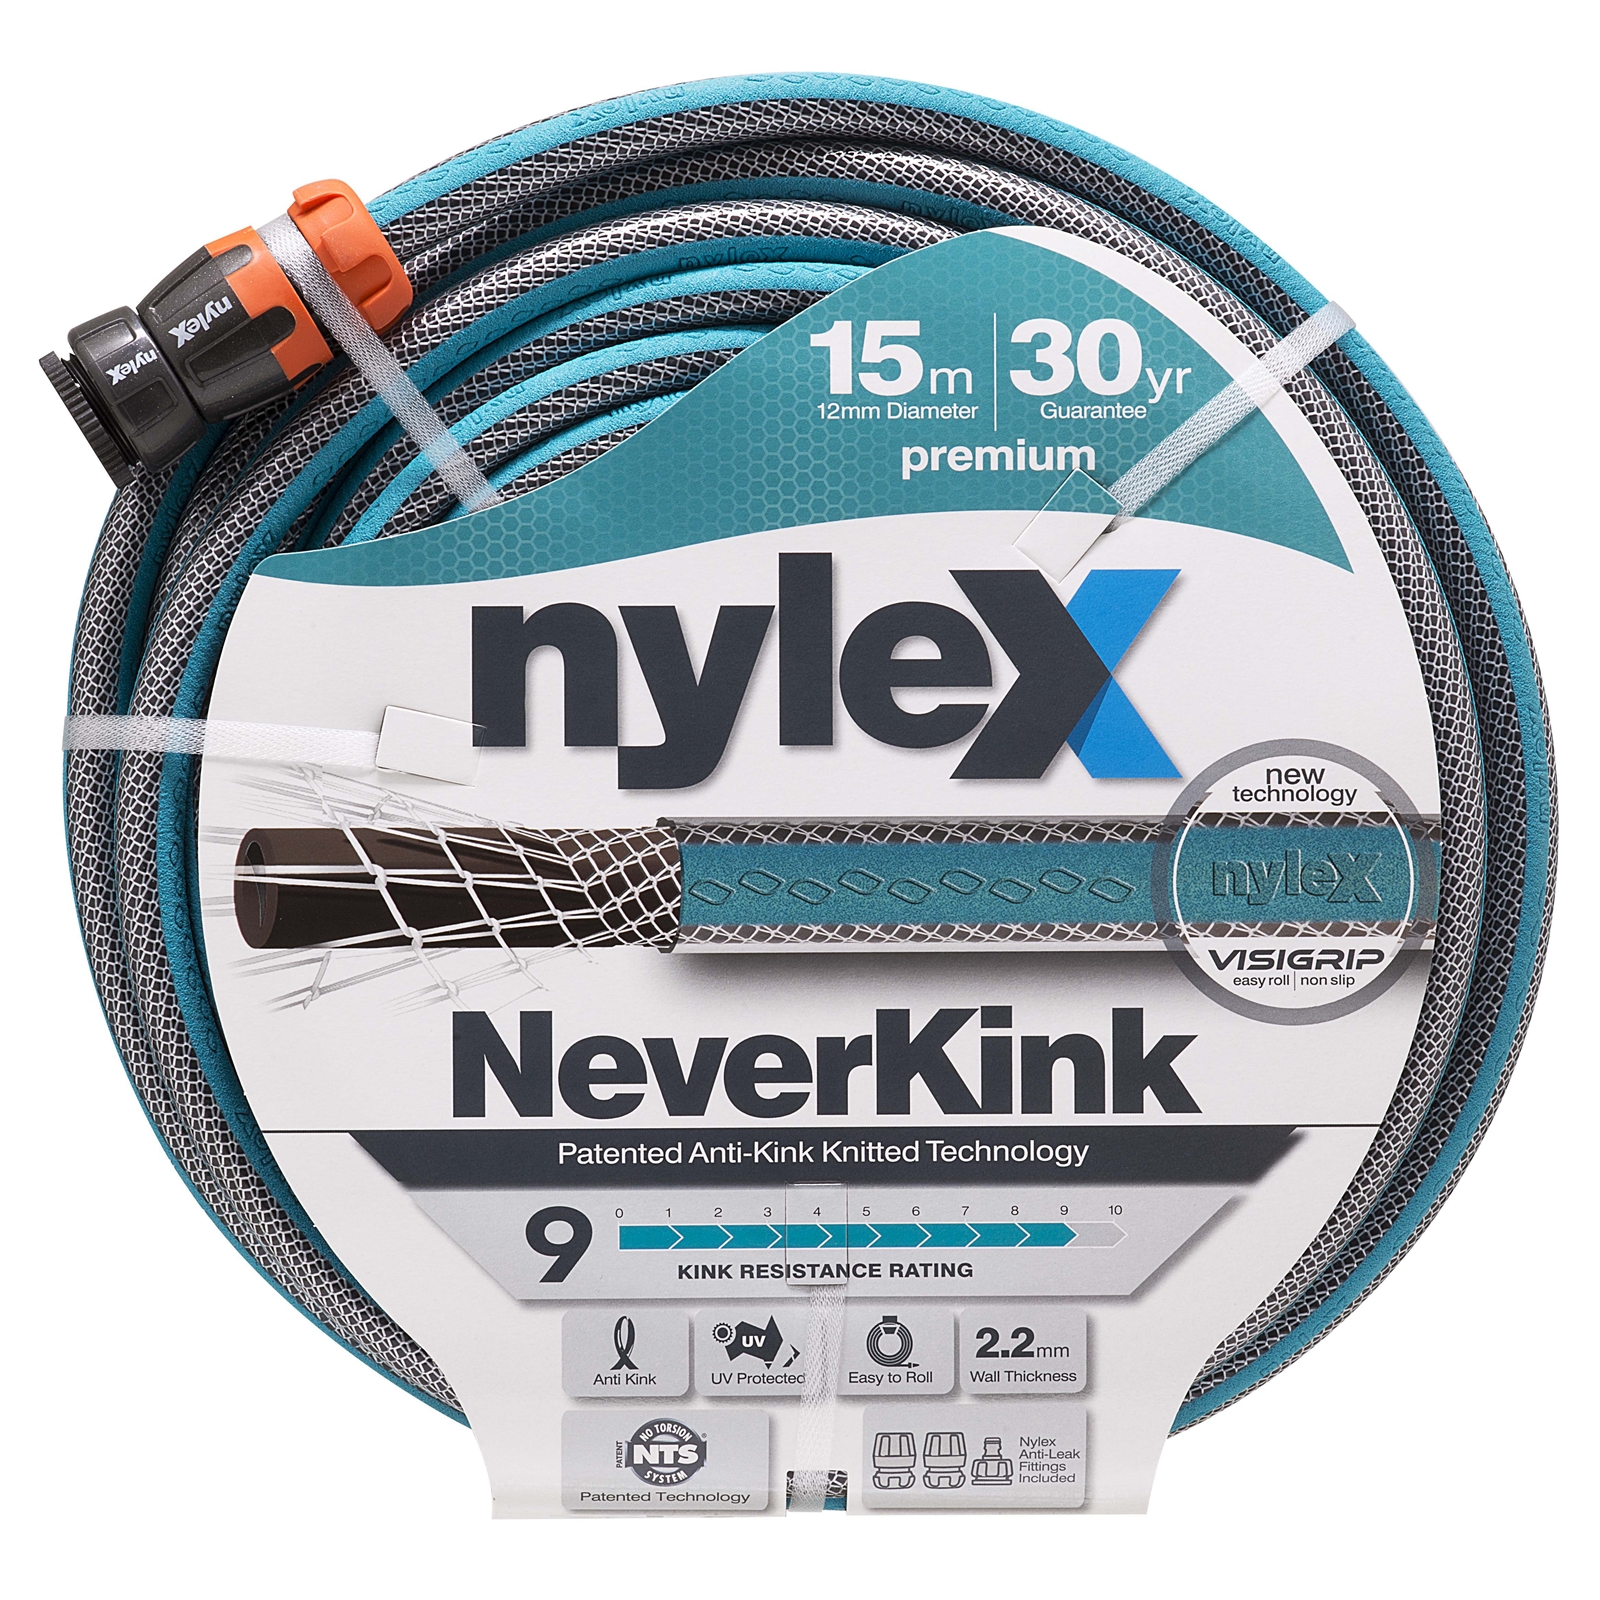 Nylex 12mm x 15m NeverKink Garden Hose